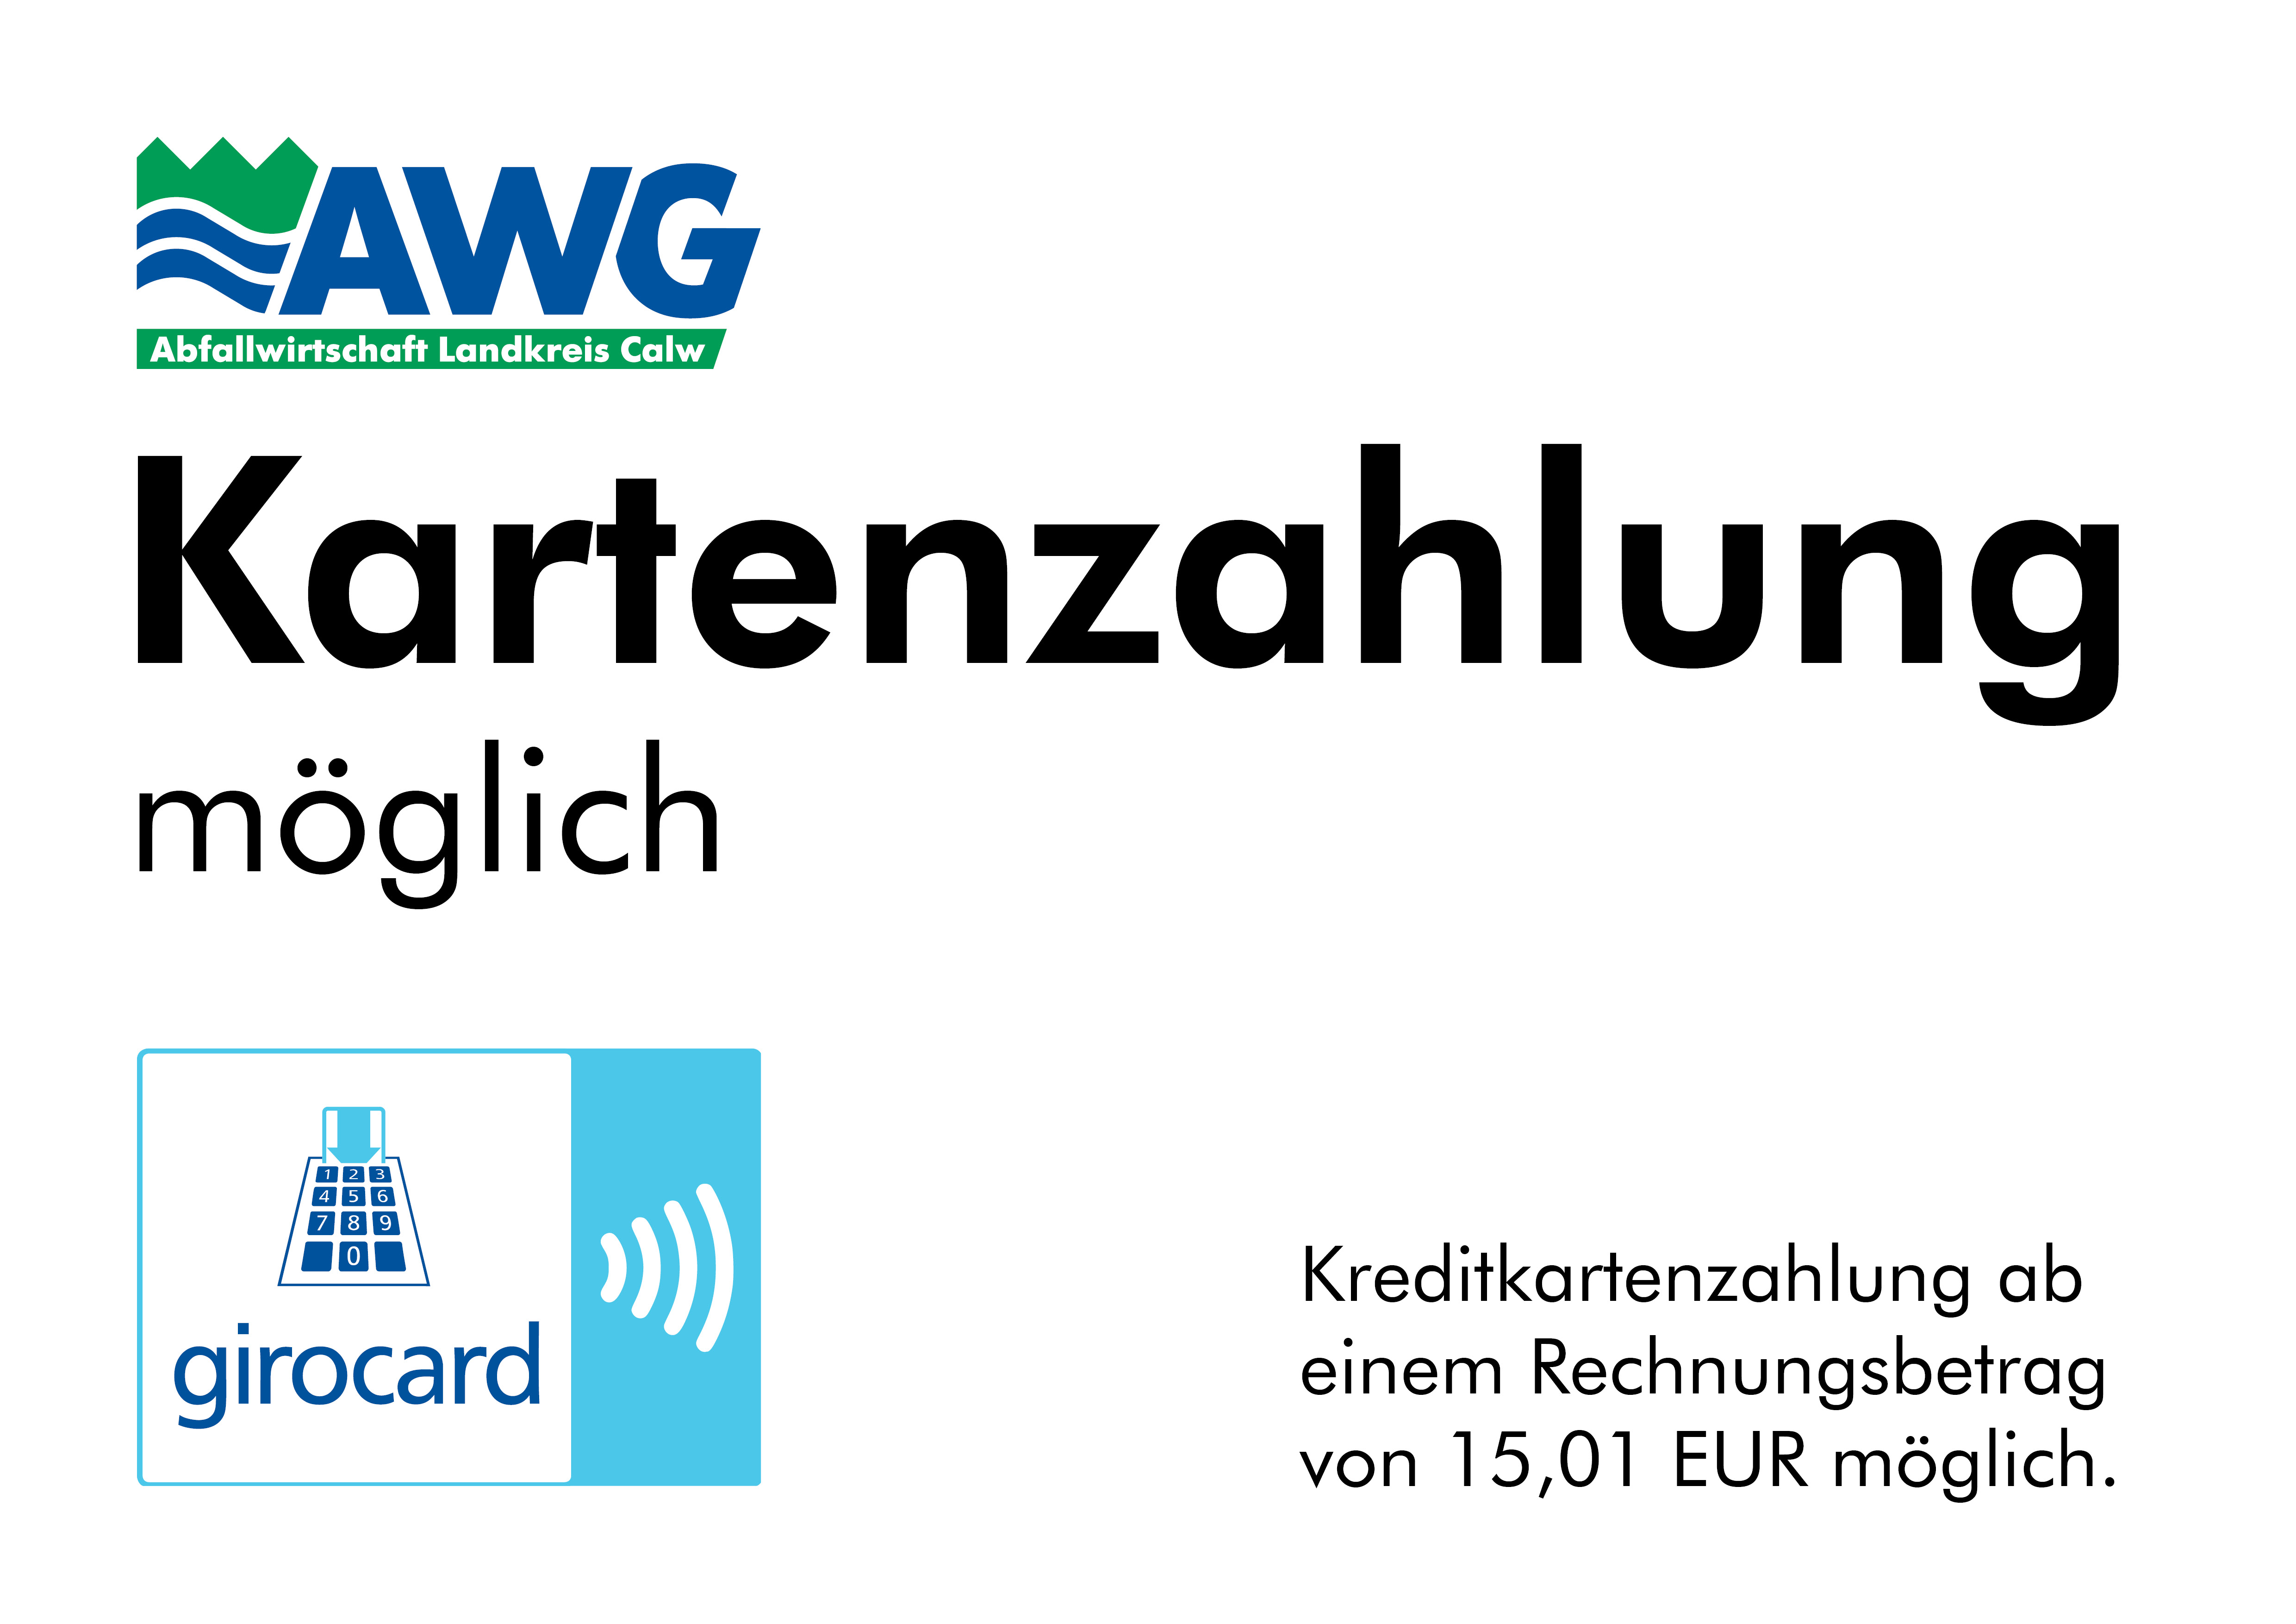 
    
            
                    Kartenzahlung ist möglich. Ab einem Rechnungsbetrag von 15,01 EUR auch Kreditkartenzahlung.
                
        
